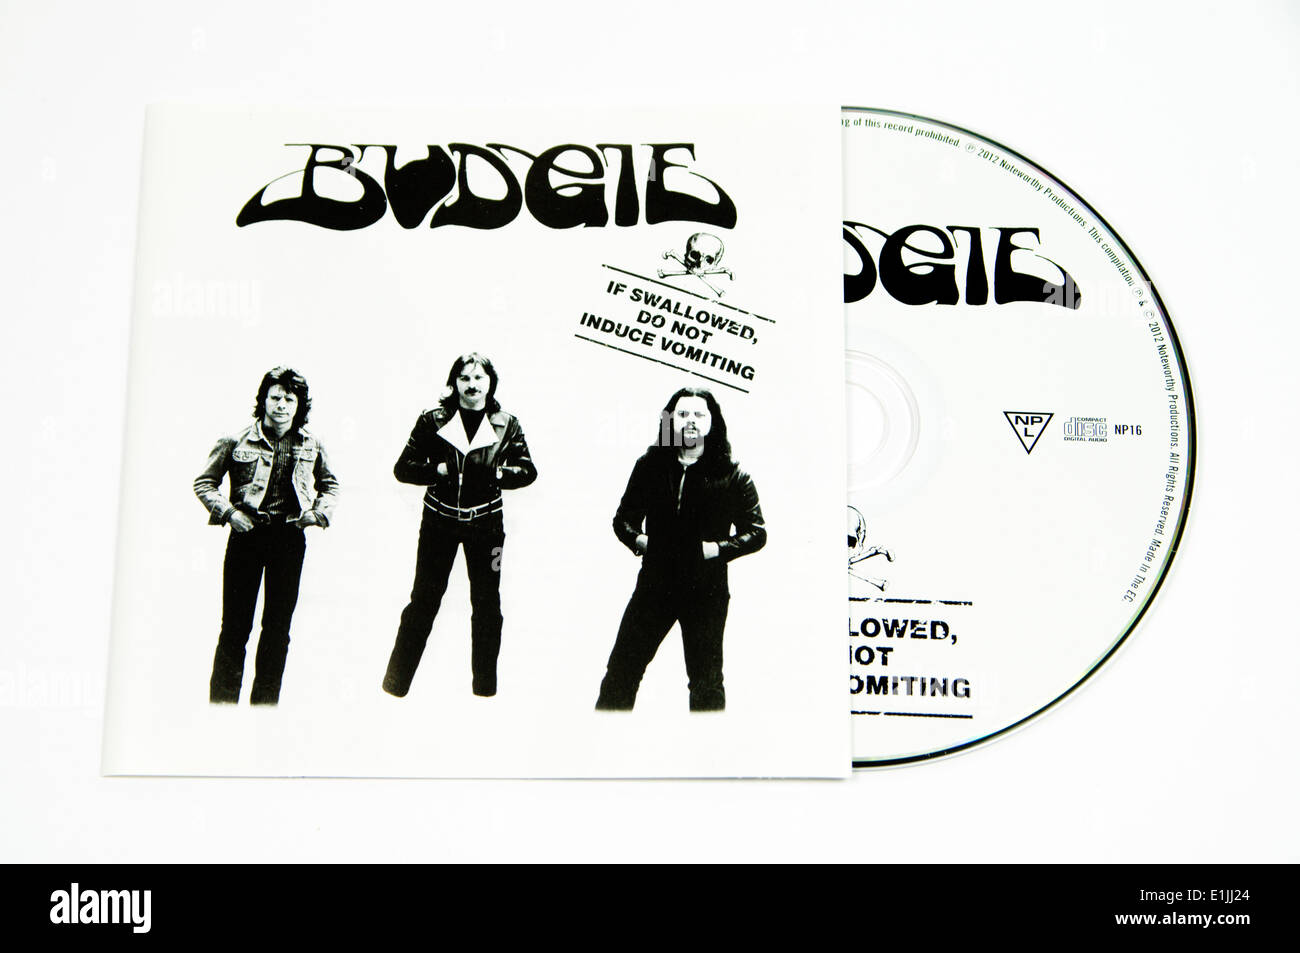 Budgie 'en caso de ingestión no induzca el vómito' CD album de rock progresivo Foto de stock